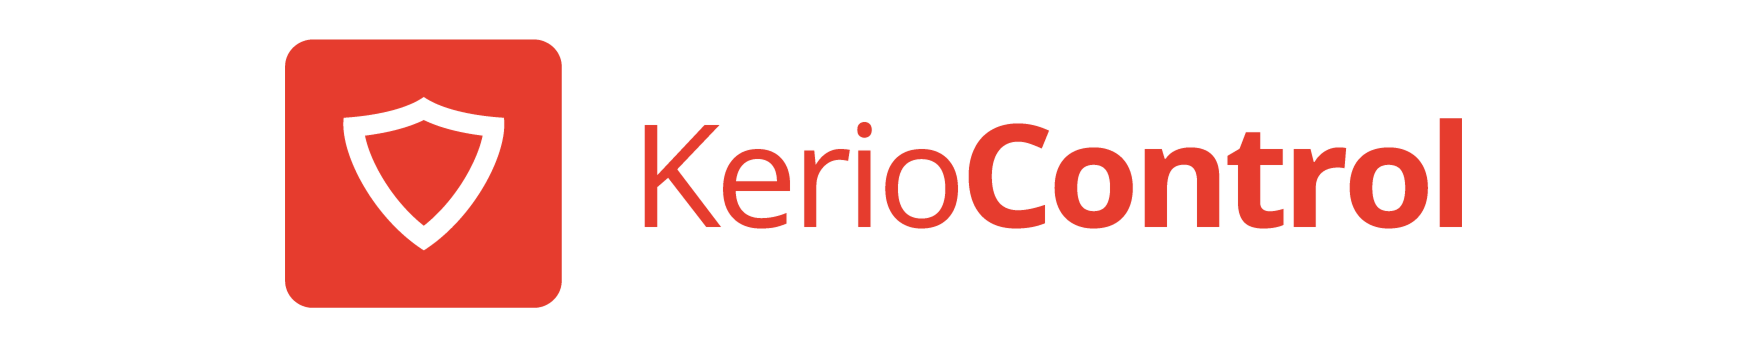 kerio_logo